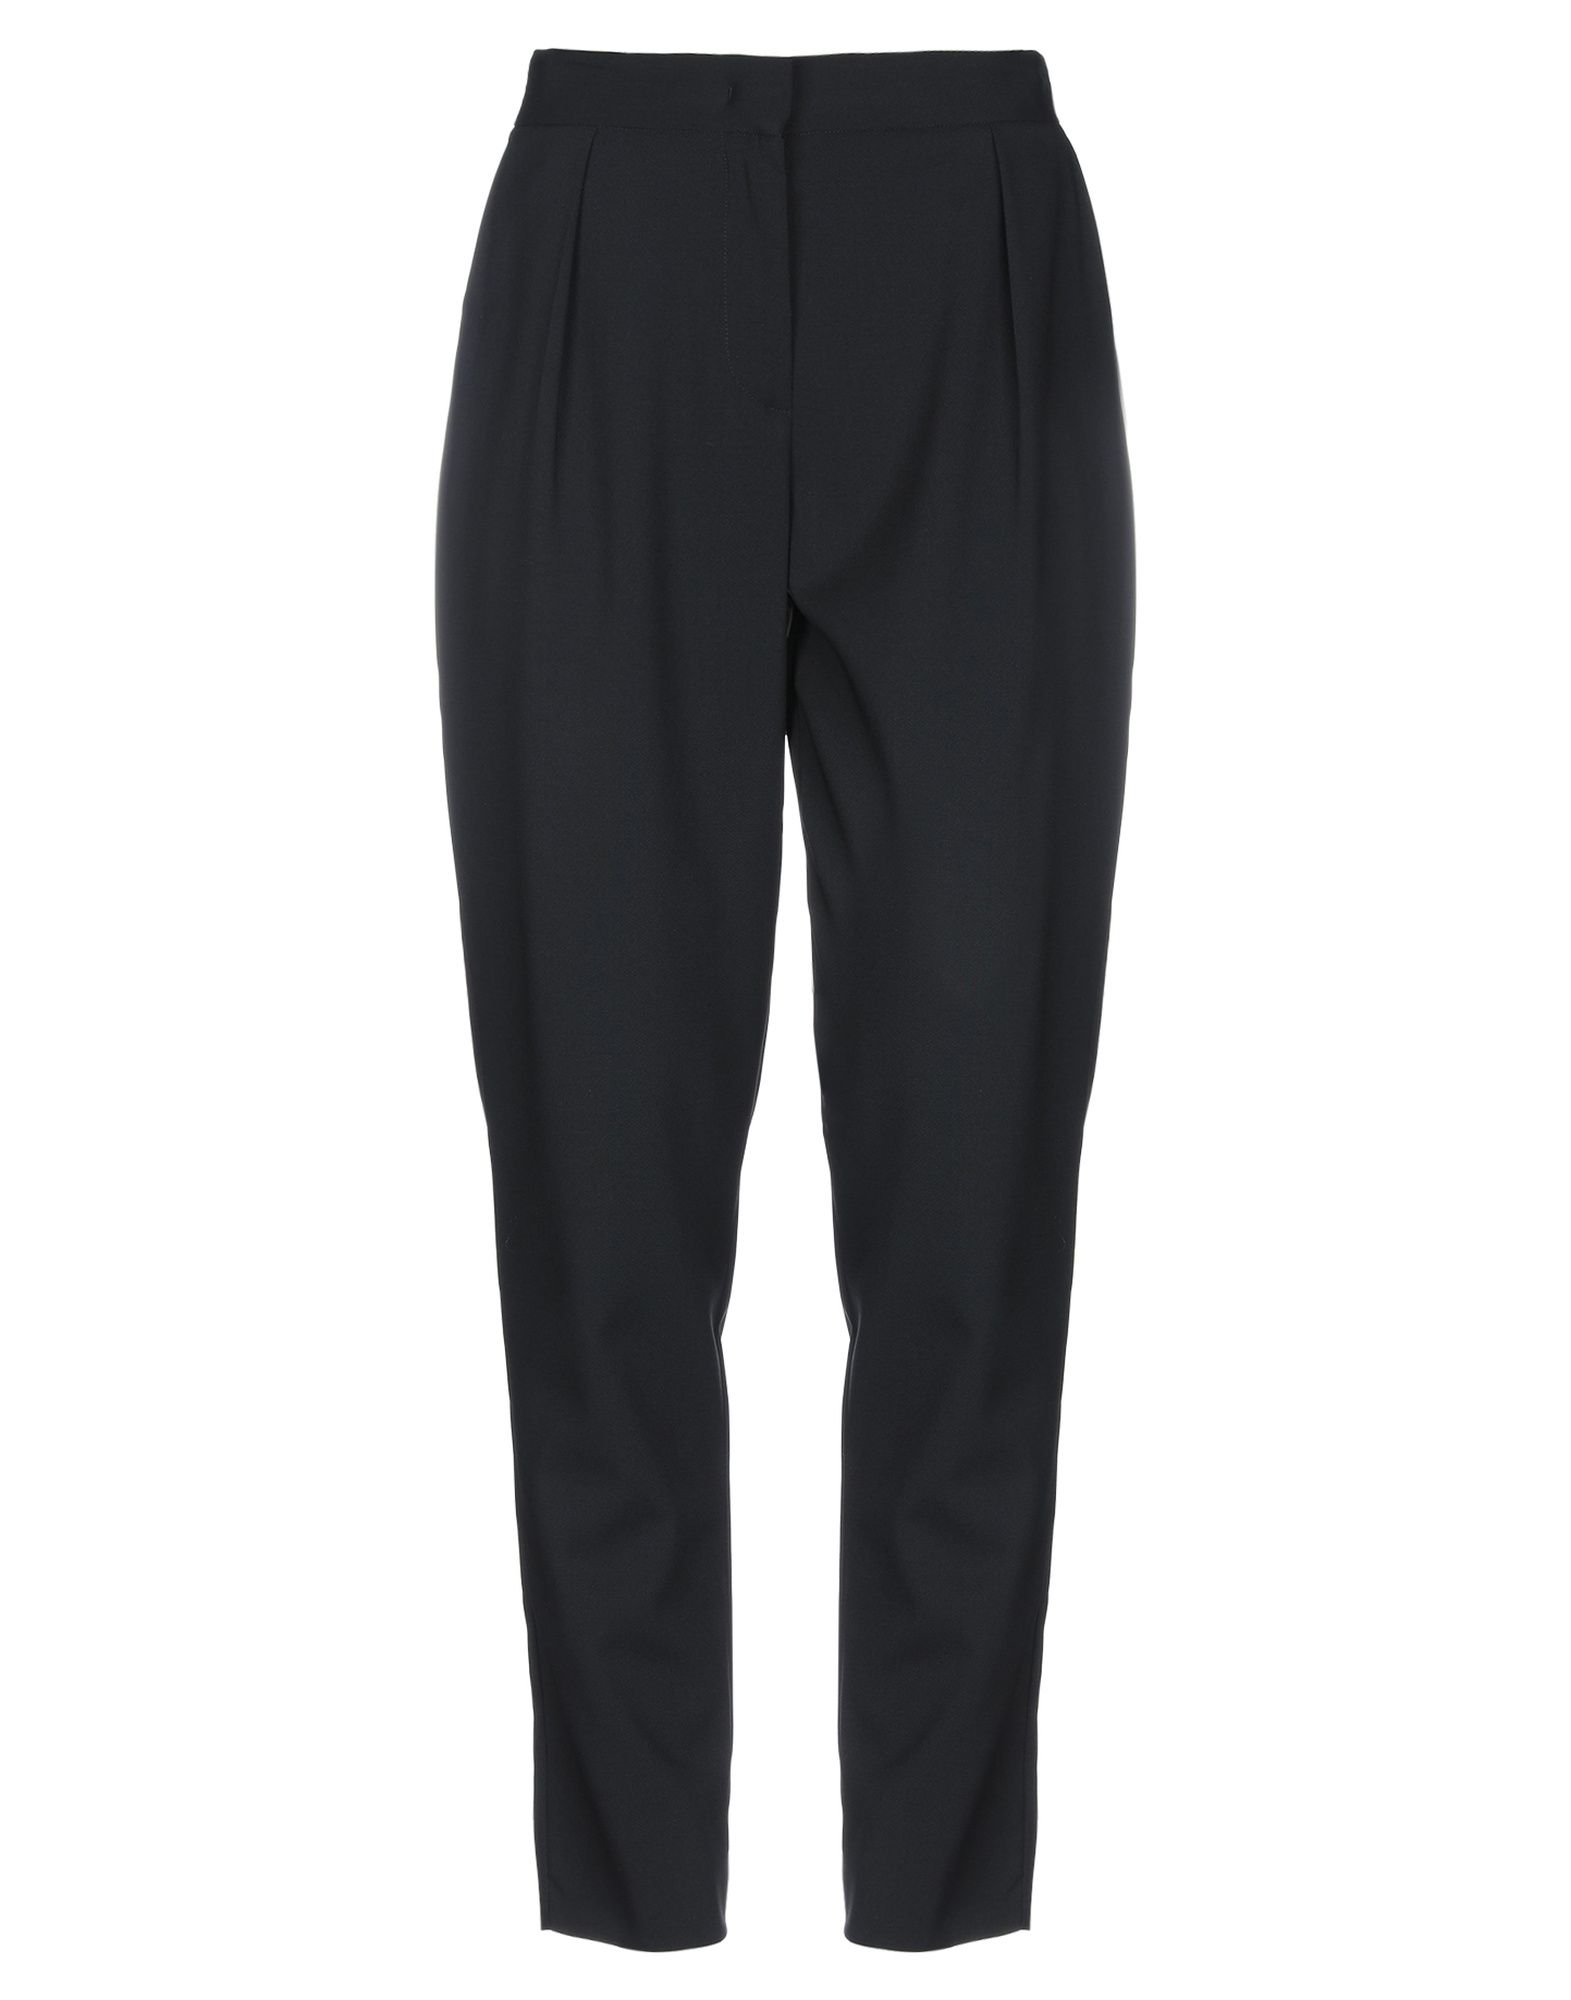 Shop Brian Dales Woman Pants Black Size 6 Polyester, Wool, Lycra